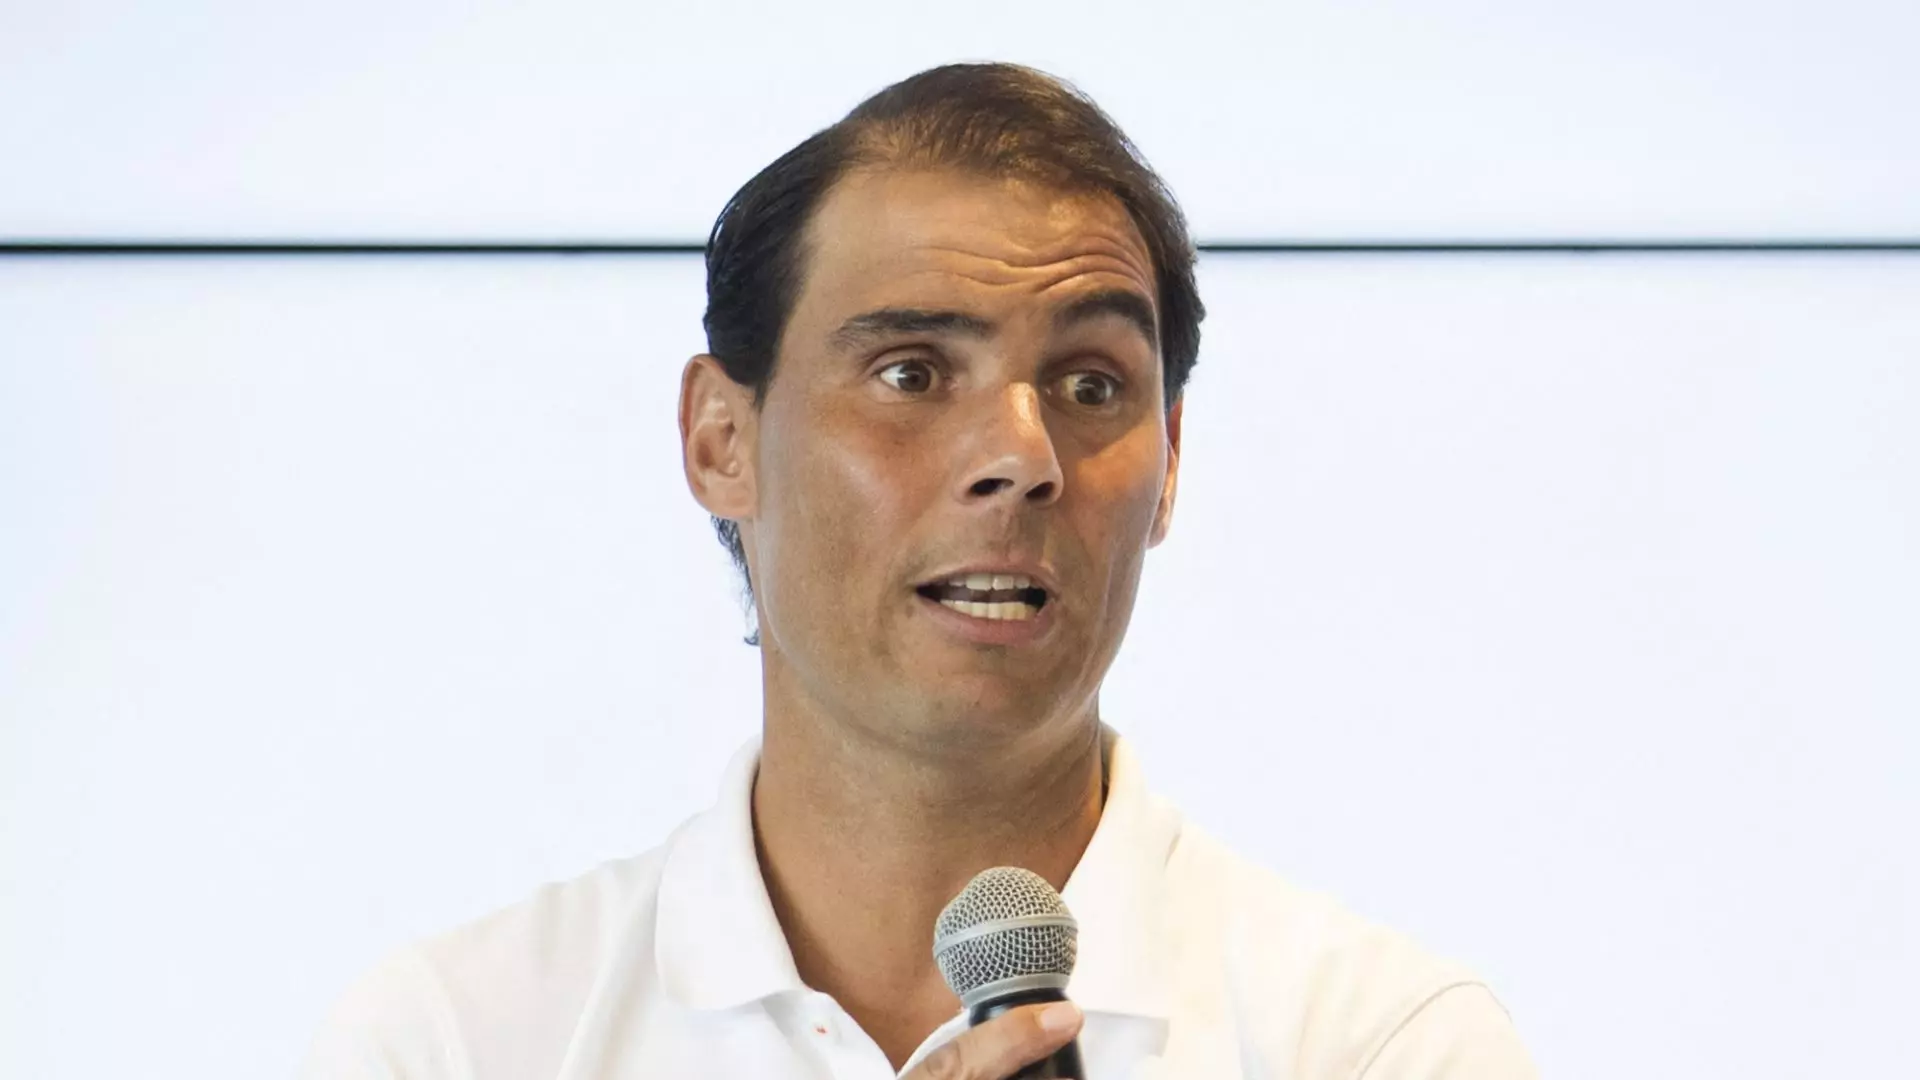 Rafael Nadal ritorna: zio Toni annuncia i prossimi obiettivi